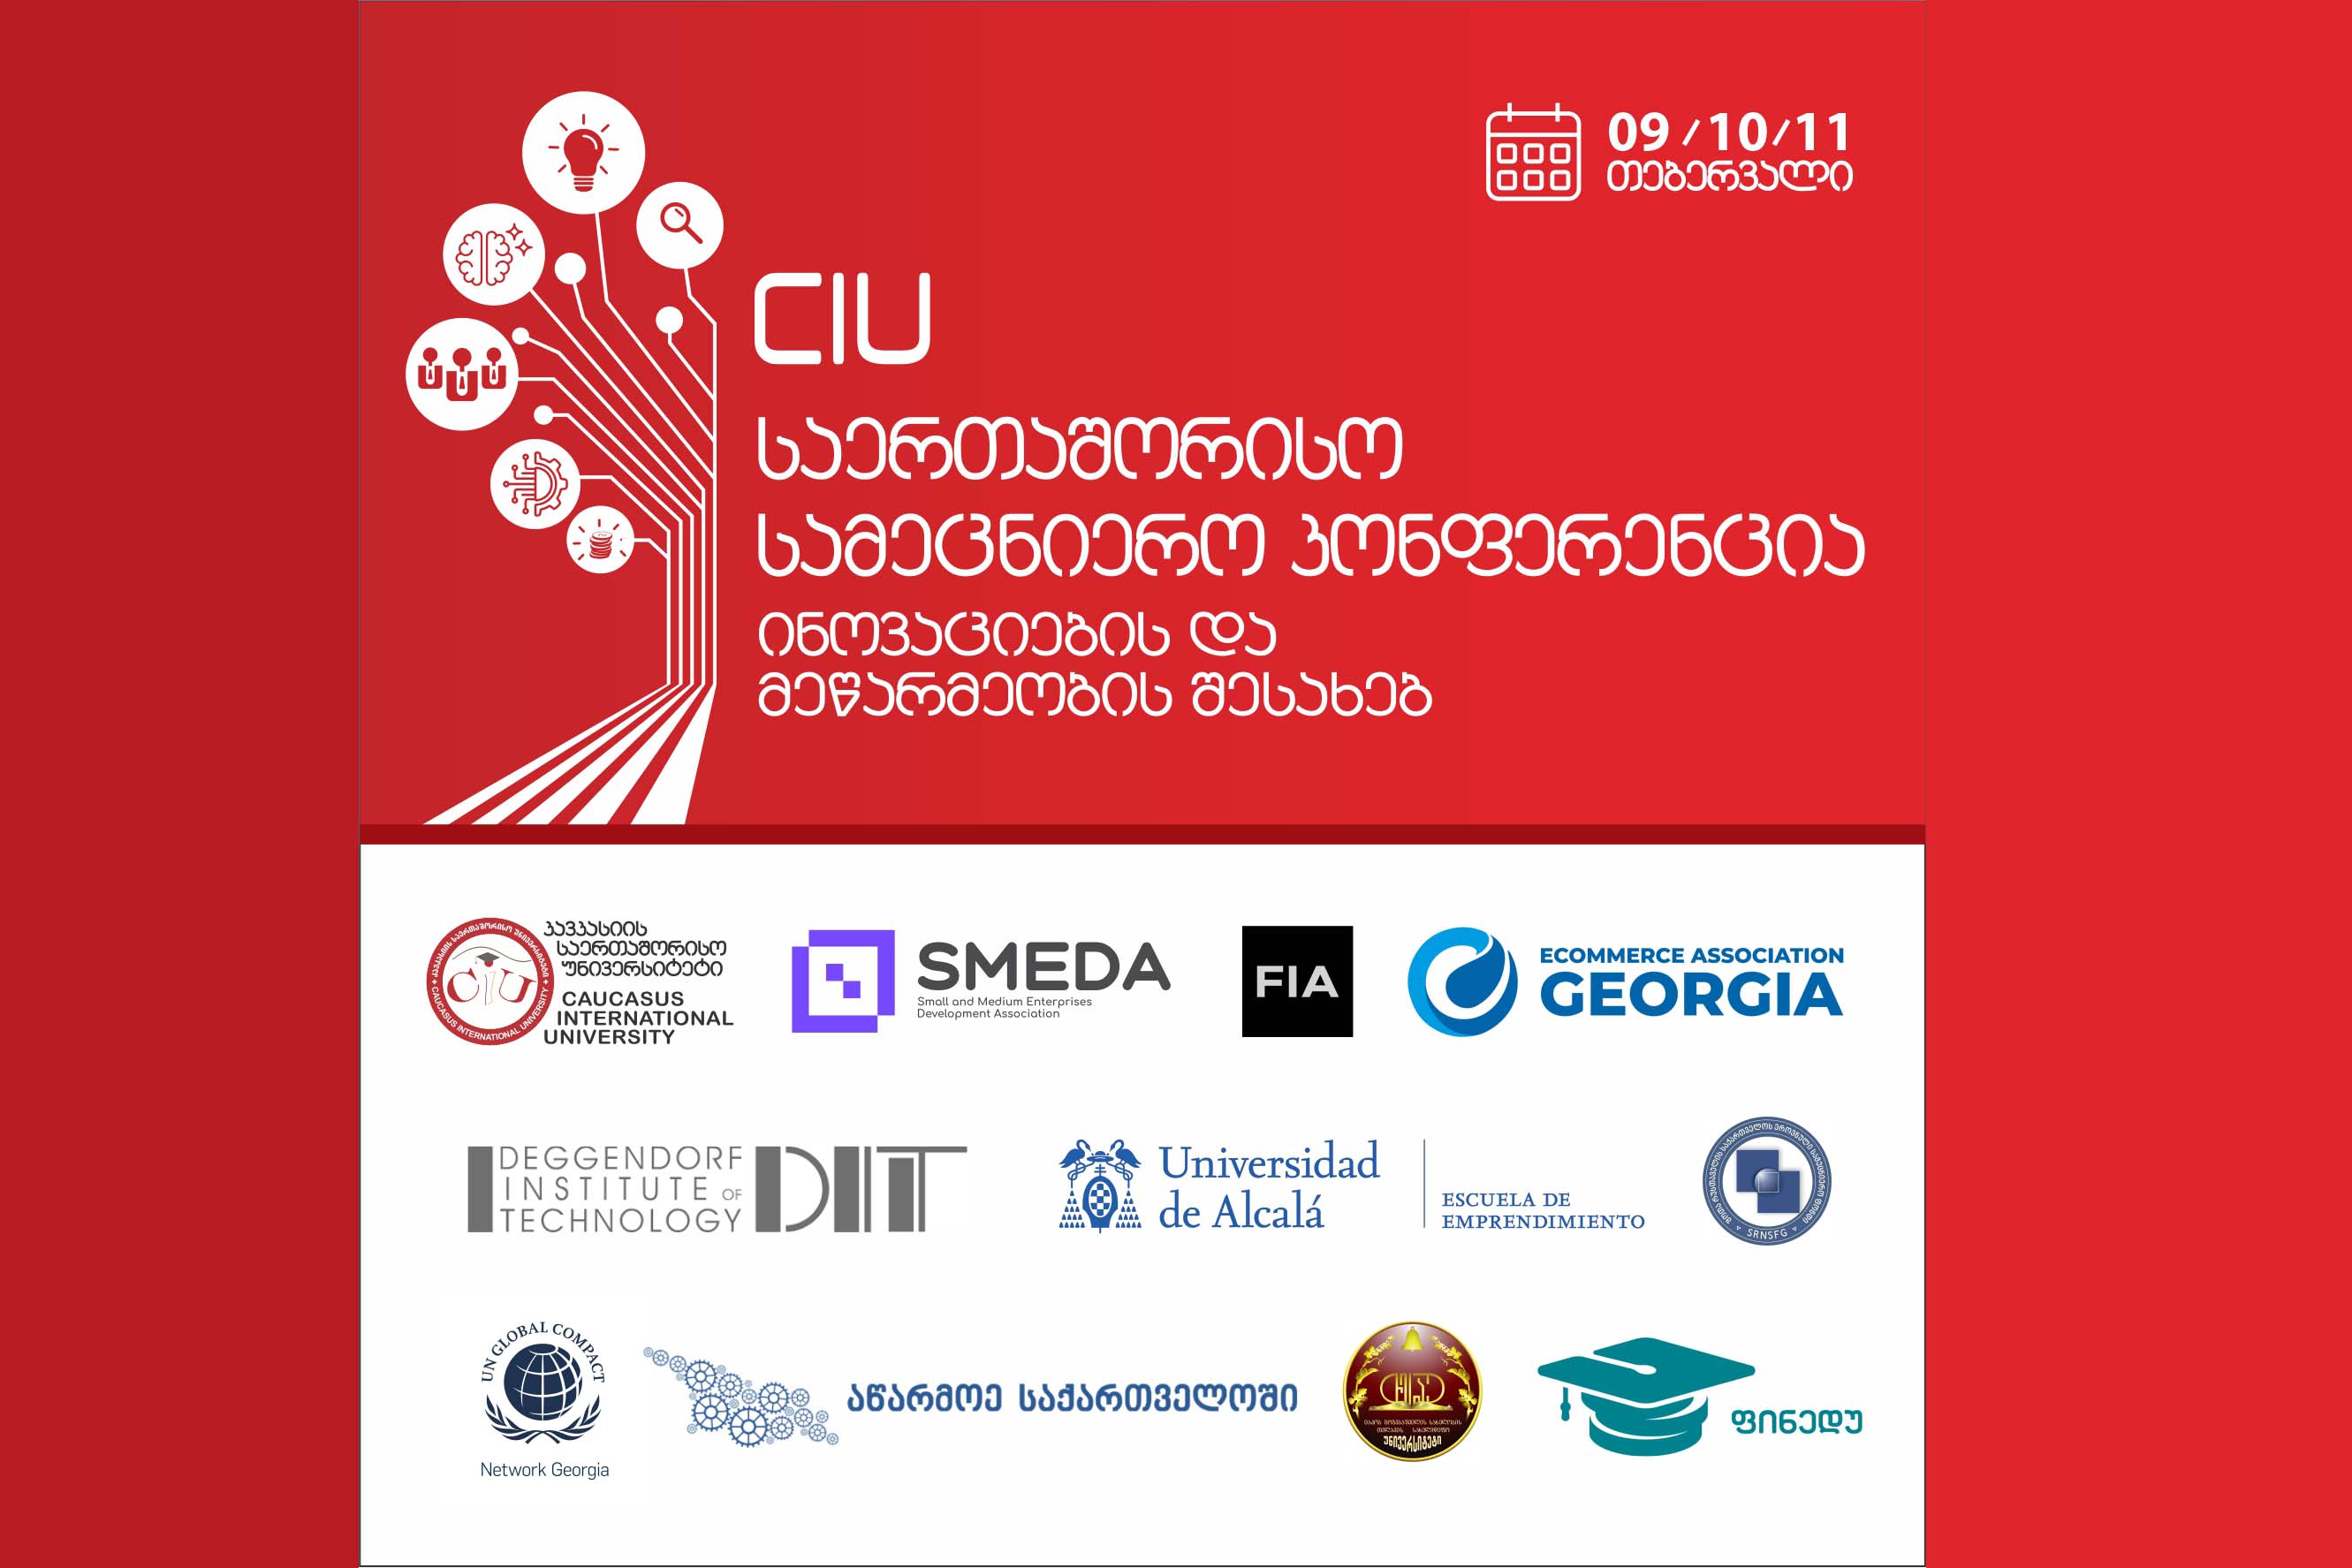 CIU ინოვაციების და მეწარმეობის შესახებ საერთაშორისო სამეცნიერო კონფერენციას უმასპინძლებს